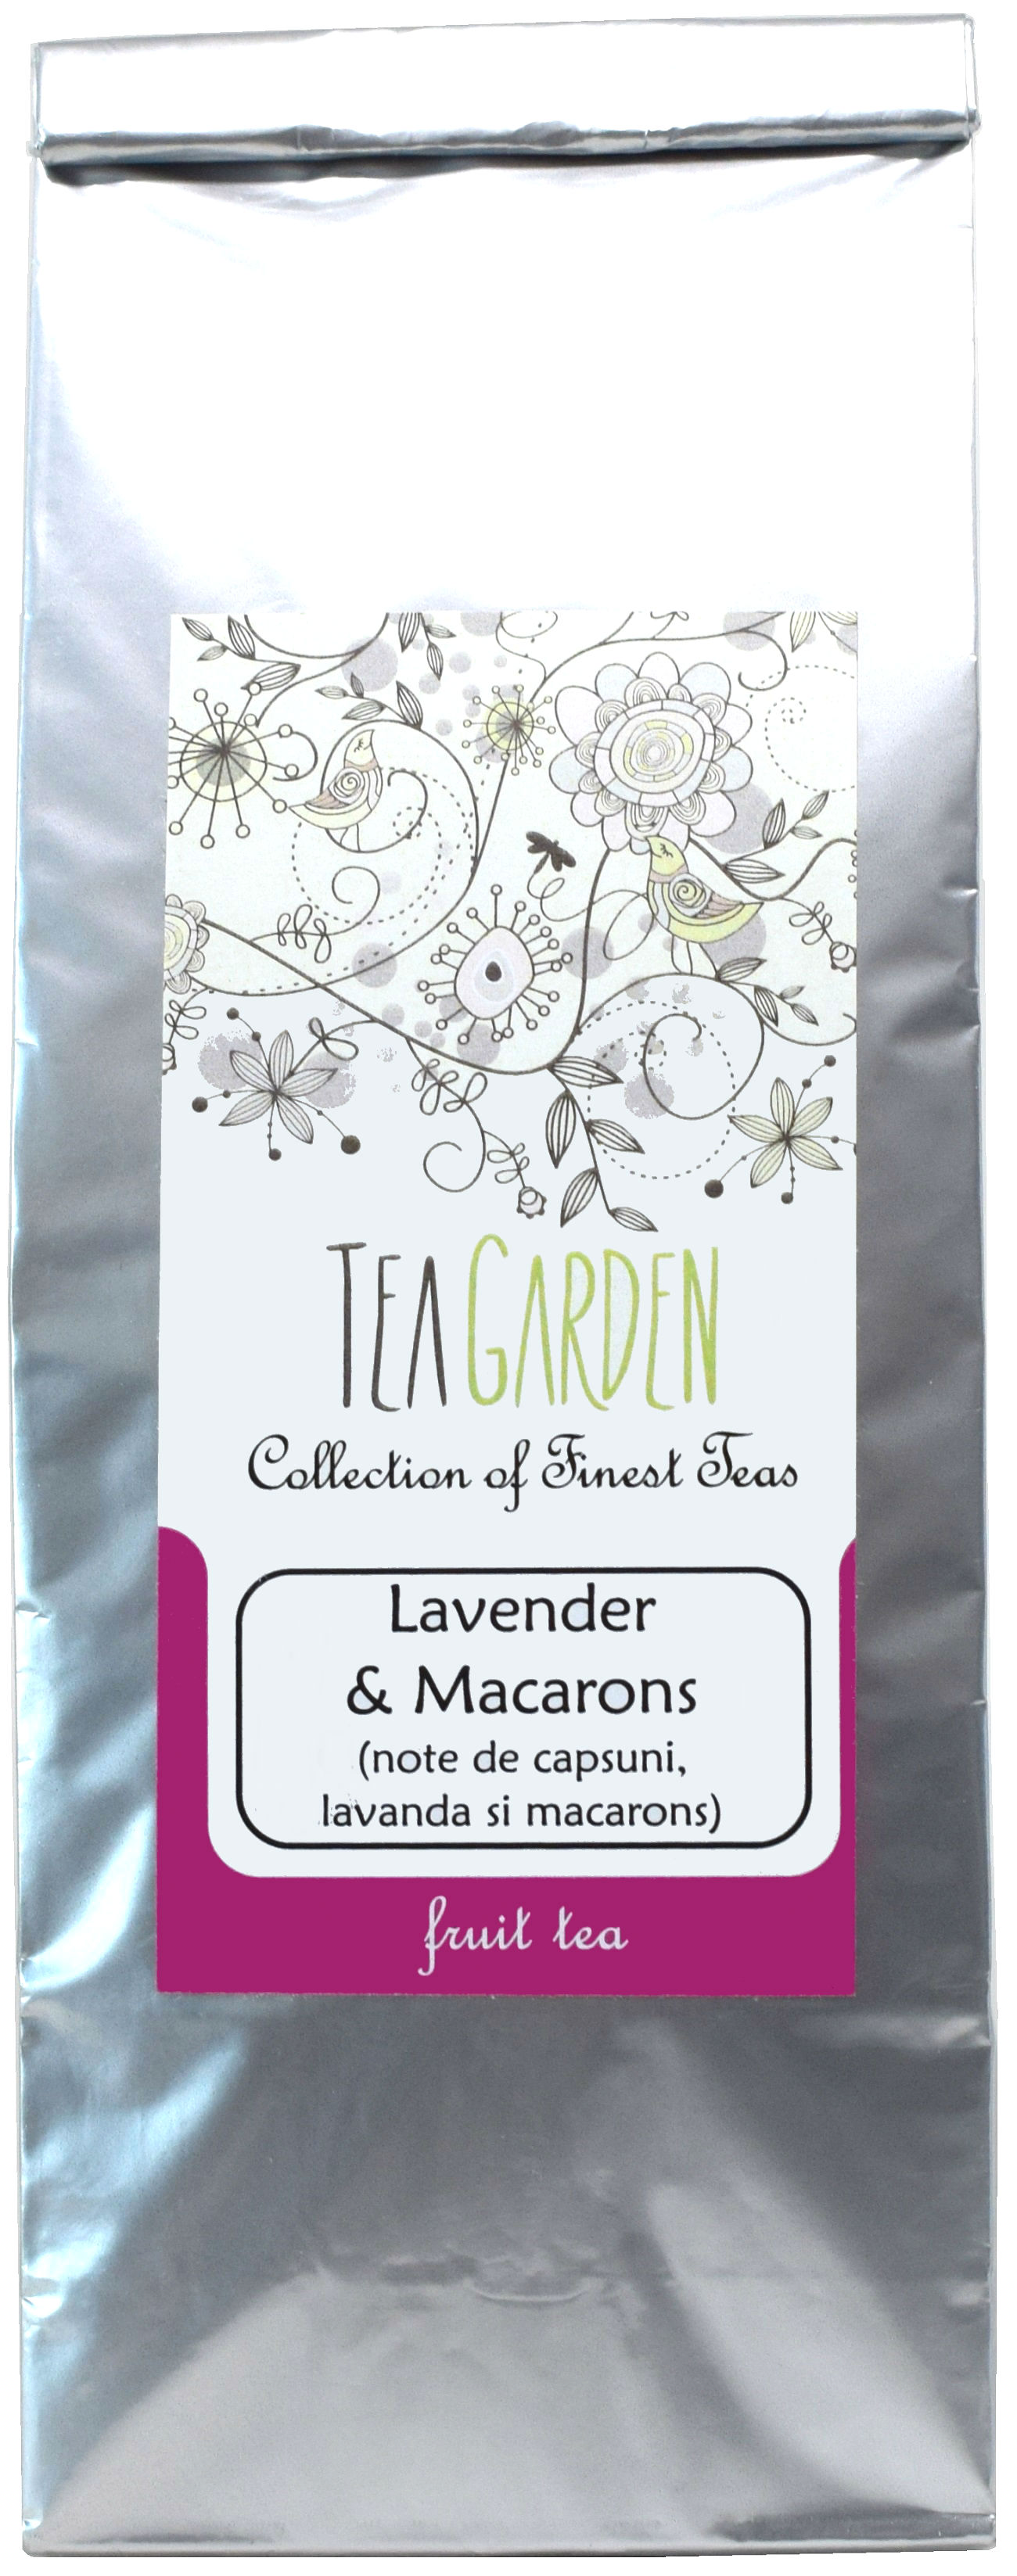 Ceai Lavender & Macarons 50 gr - Tea Garden